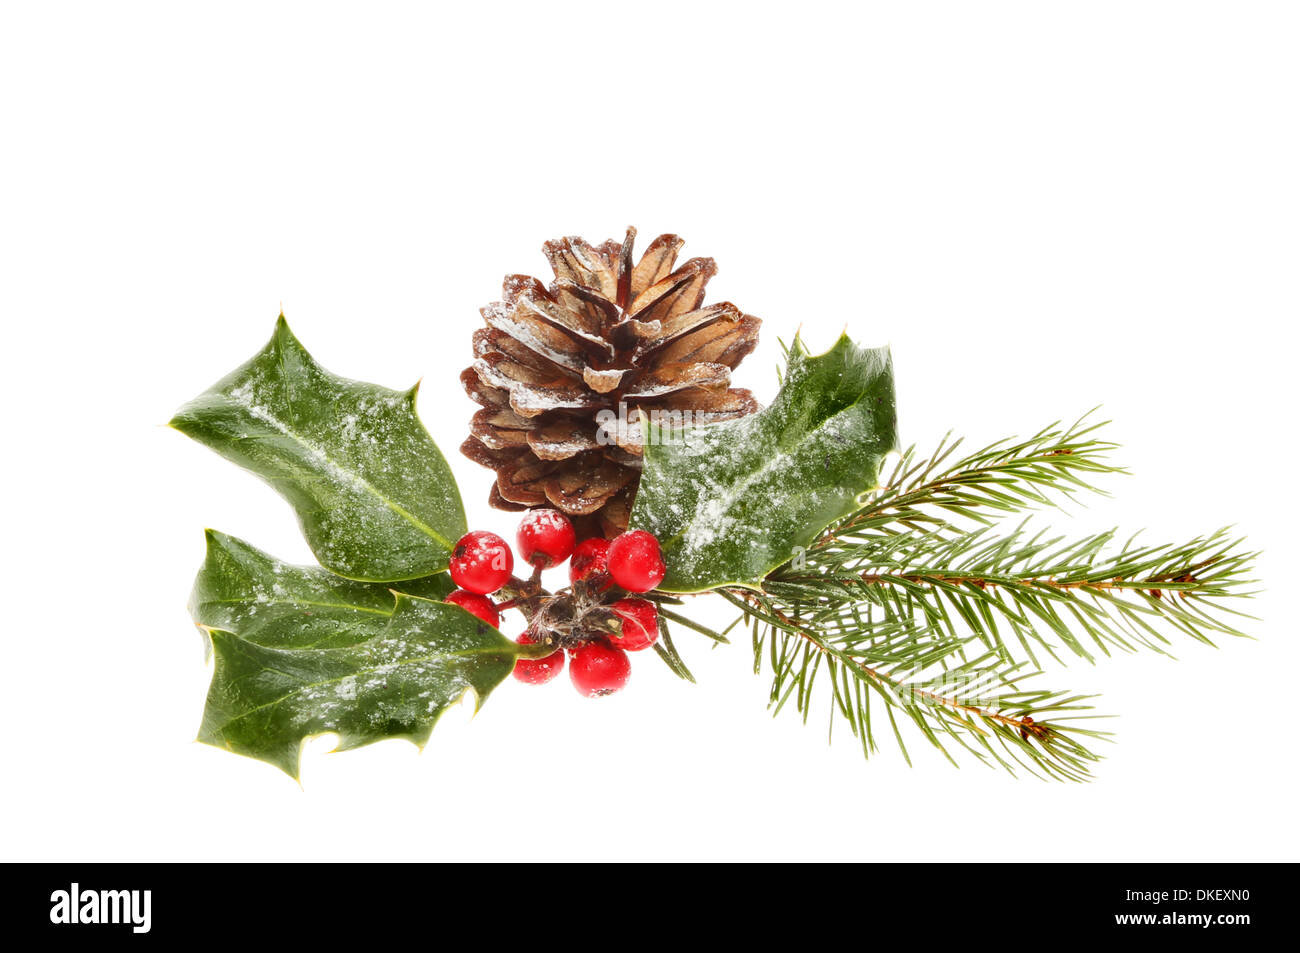 Follaje estacional de Navidad un cono de pino, agujas de pino y Holly con bayas aisladas contra un blanco Foto de stock